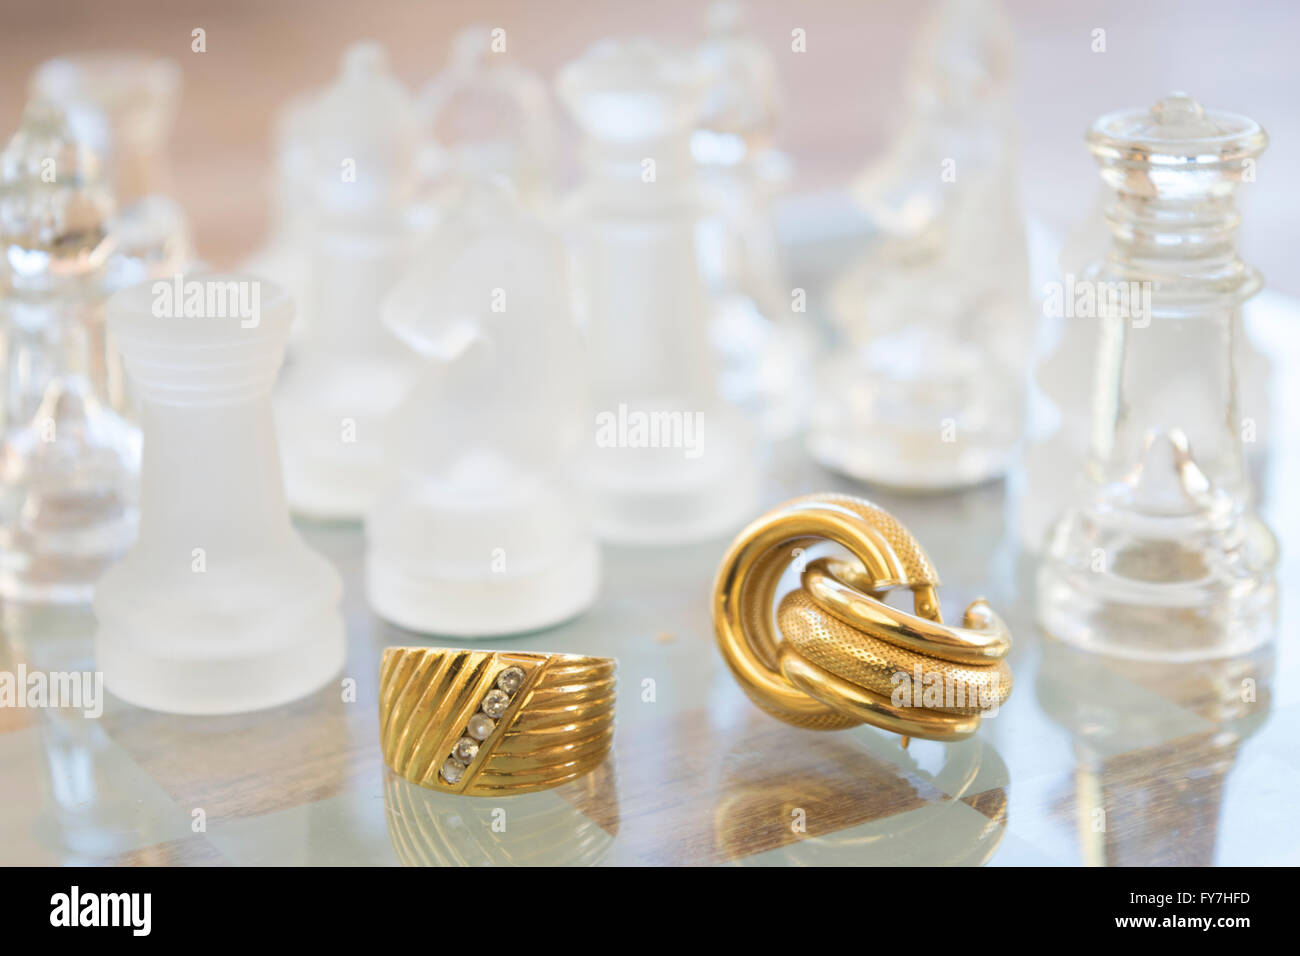 Famiglia Anello oro e orecchini su una scacchiera di vetro Foto Stock